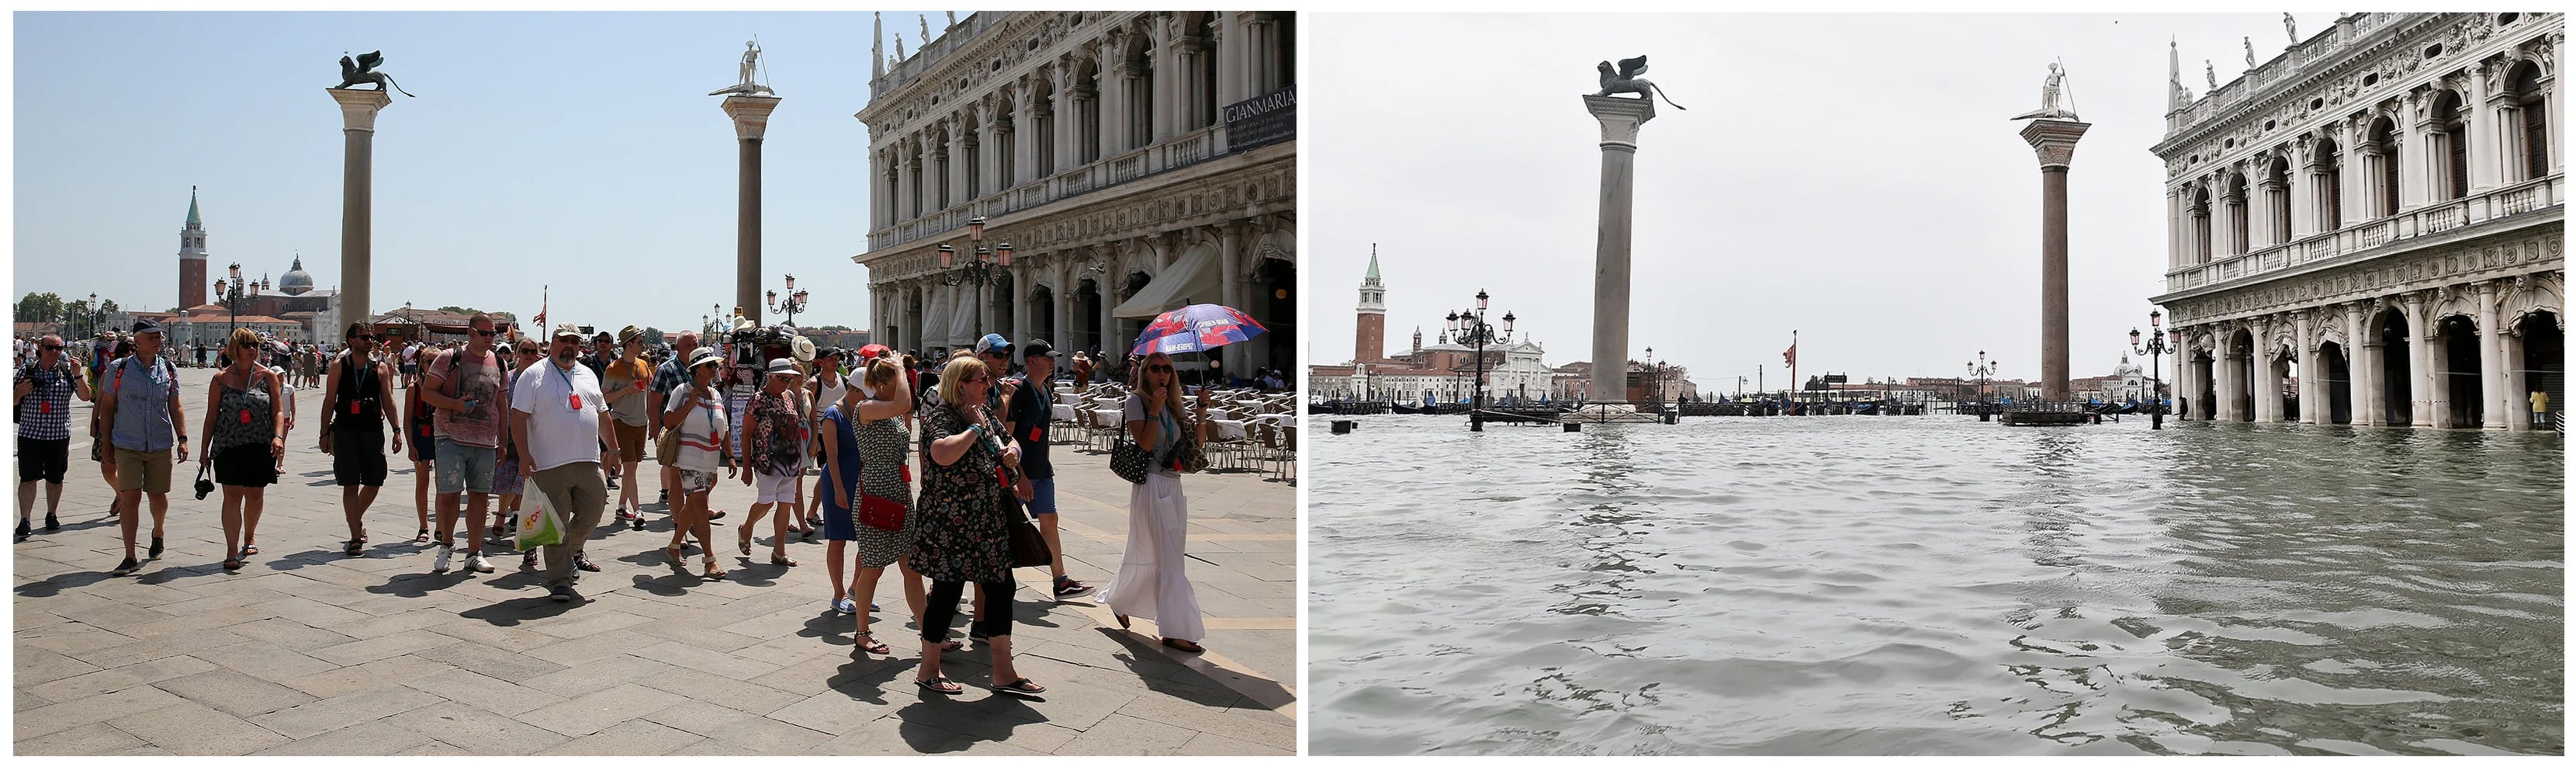 La Plaza San Marcos fue cerrada al público este viernes debido a la peor marea alta de los últimos 50 años en Venecia (REUTERS/Stefano Rellandini, Flavio Lo Scalzo)